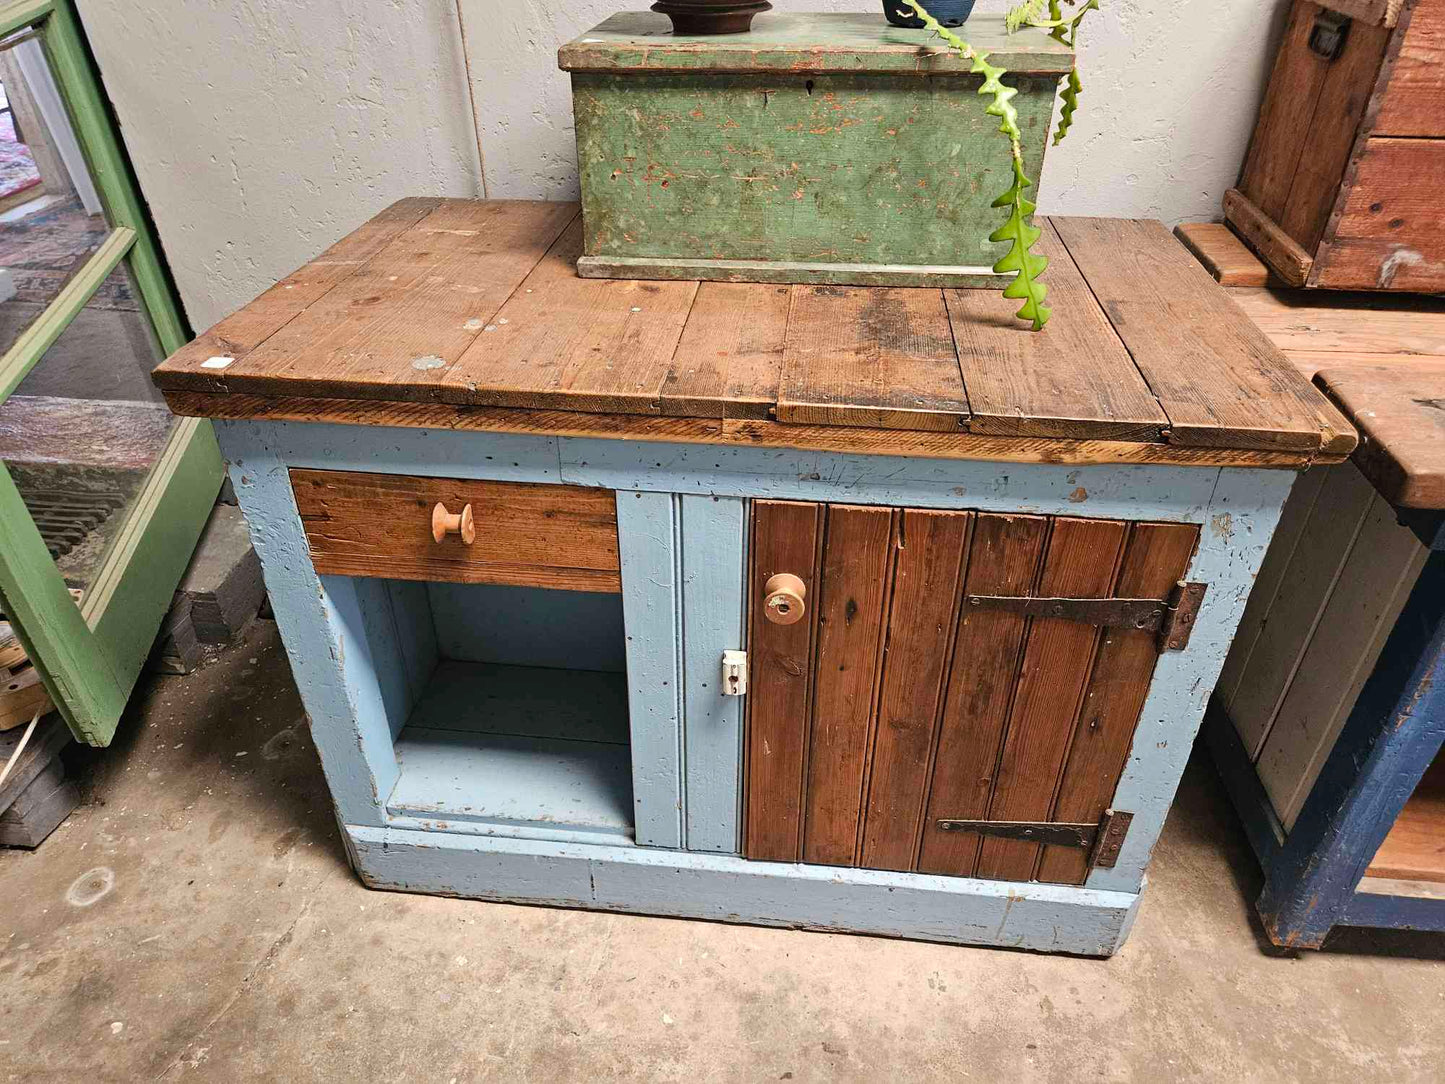 Rustic work bench / kitchen island